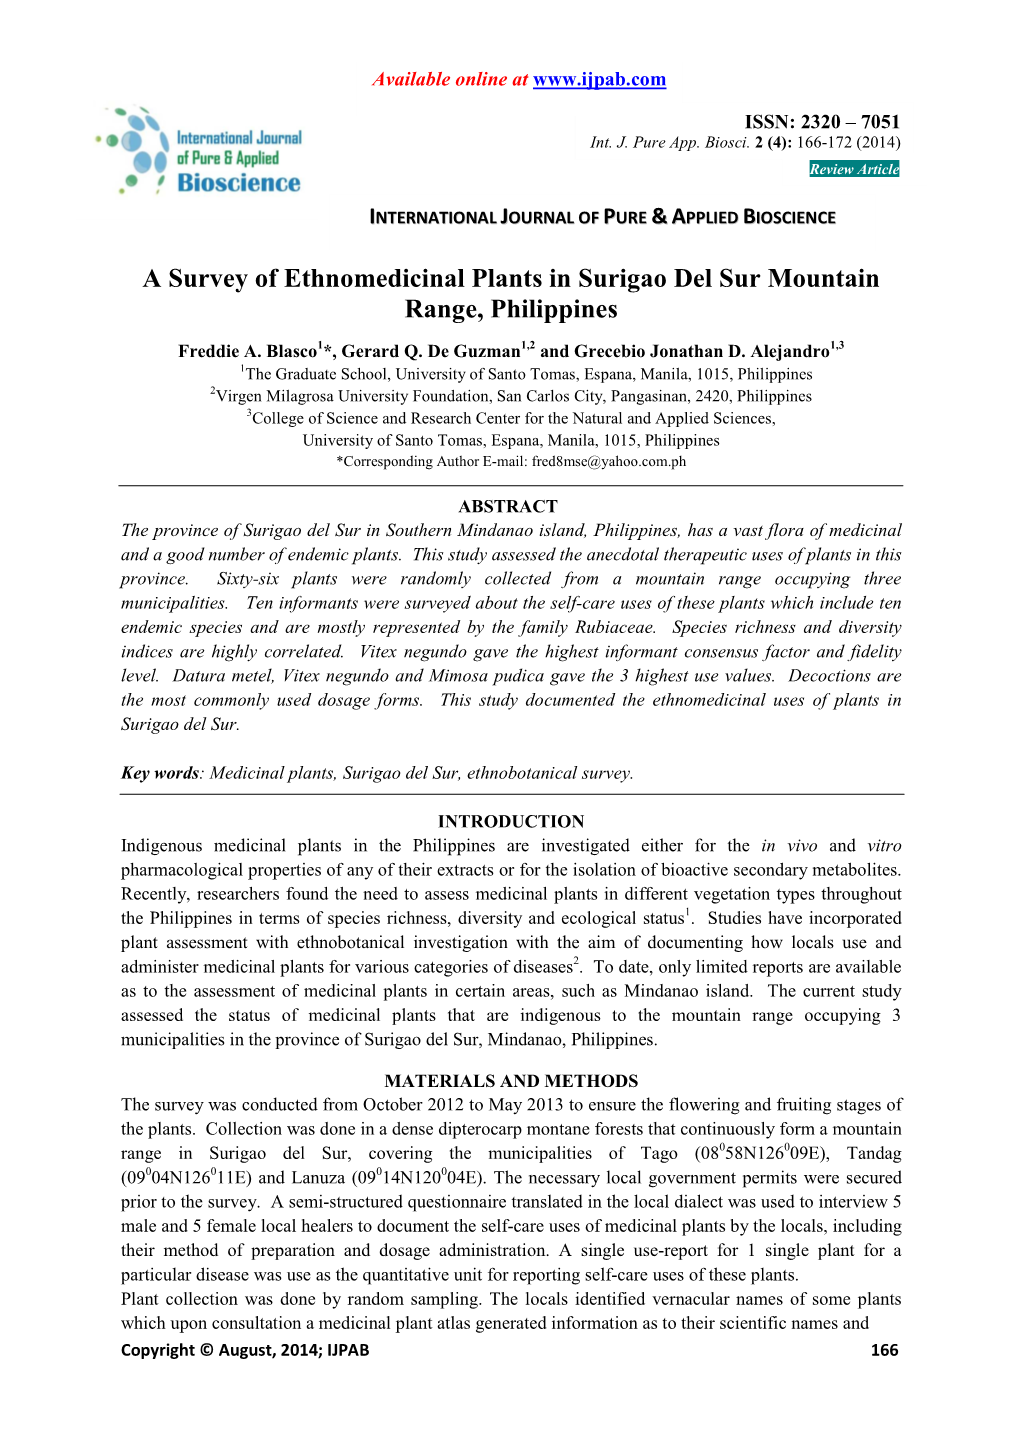 A Survey of Ethnomedicinal Plants in Surigao Del Sur Mountain Range, Philippines